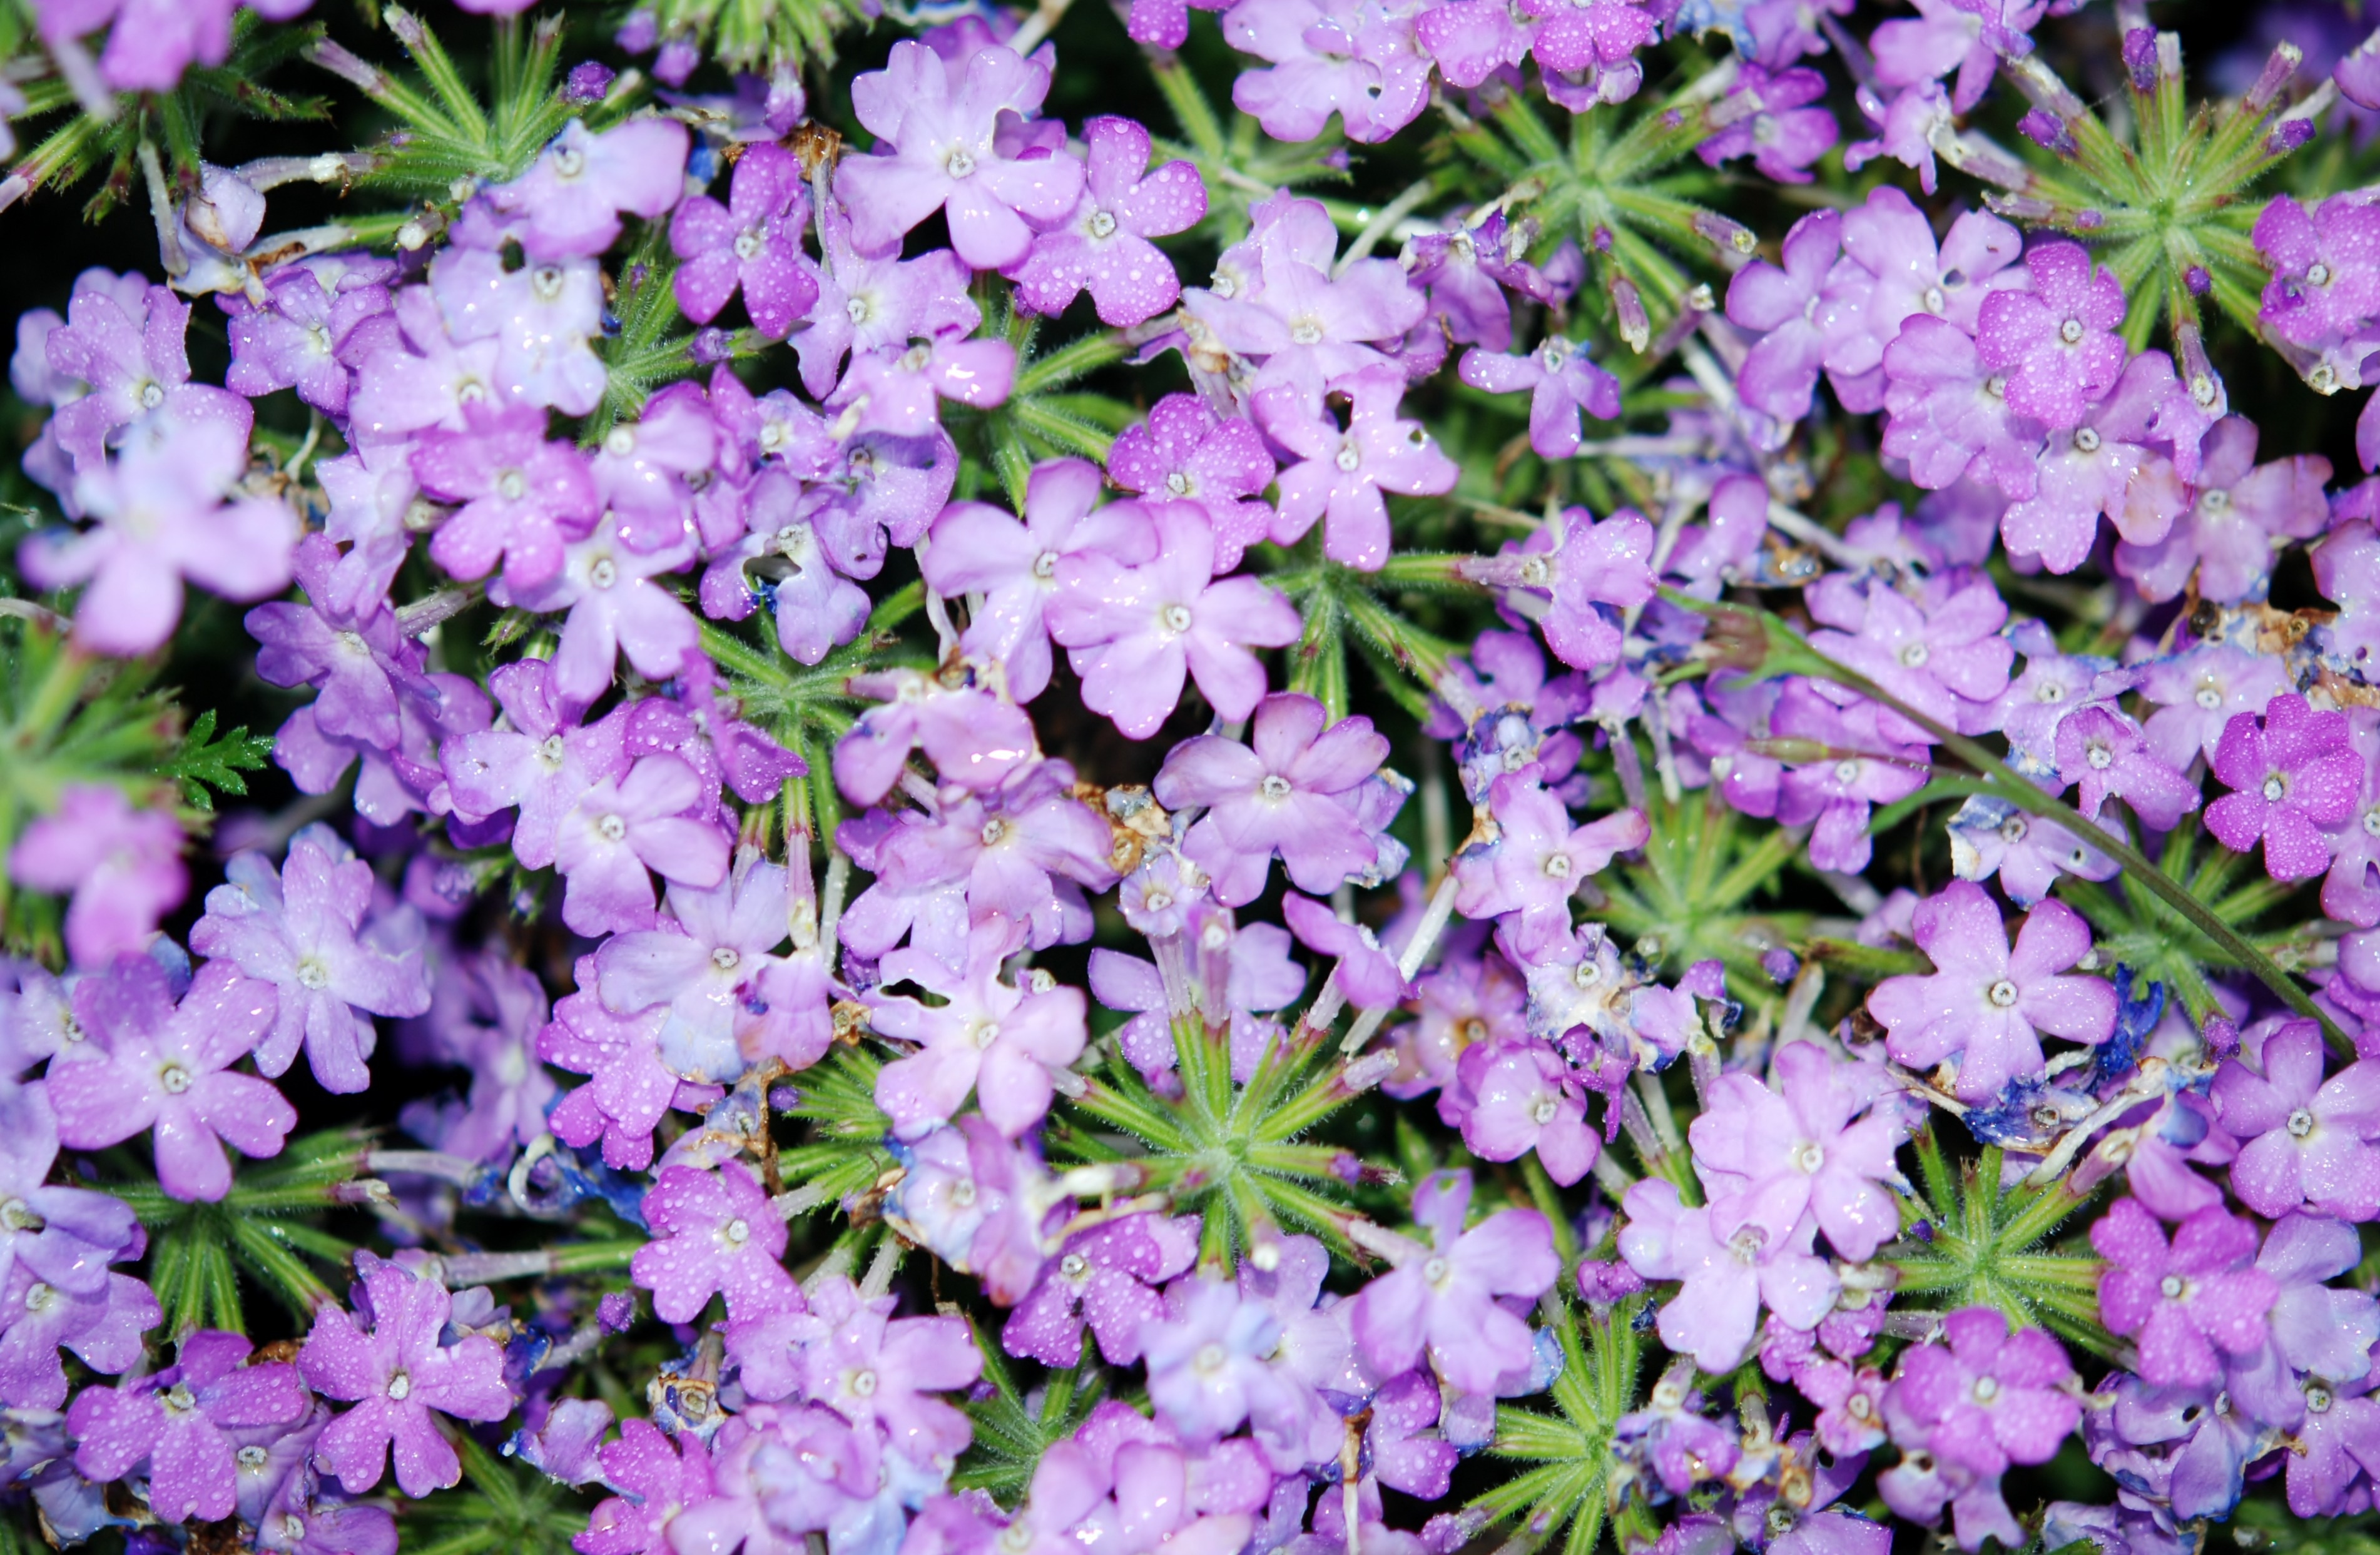 purple 5 petaled flower